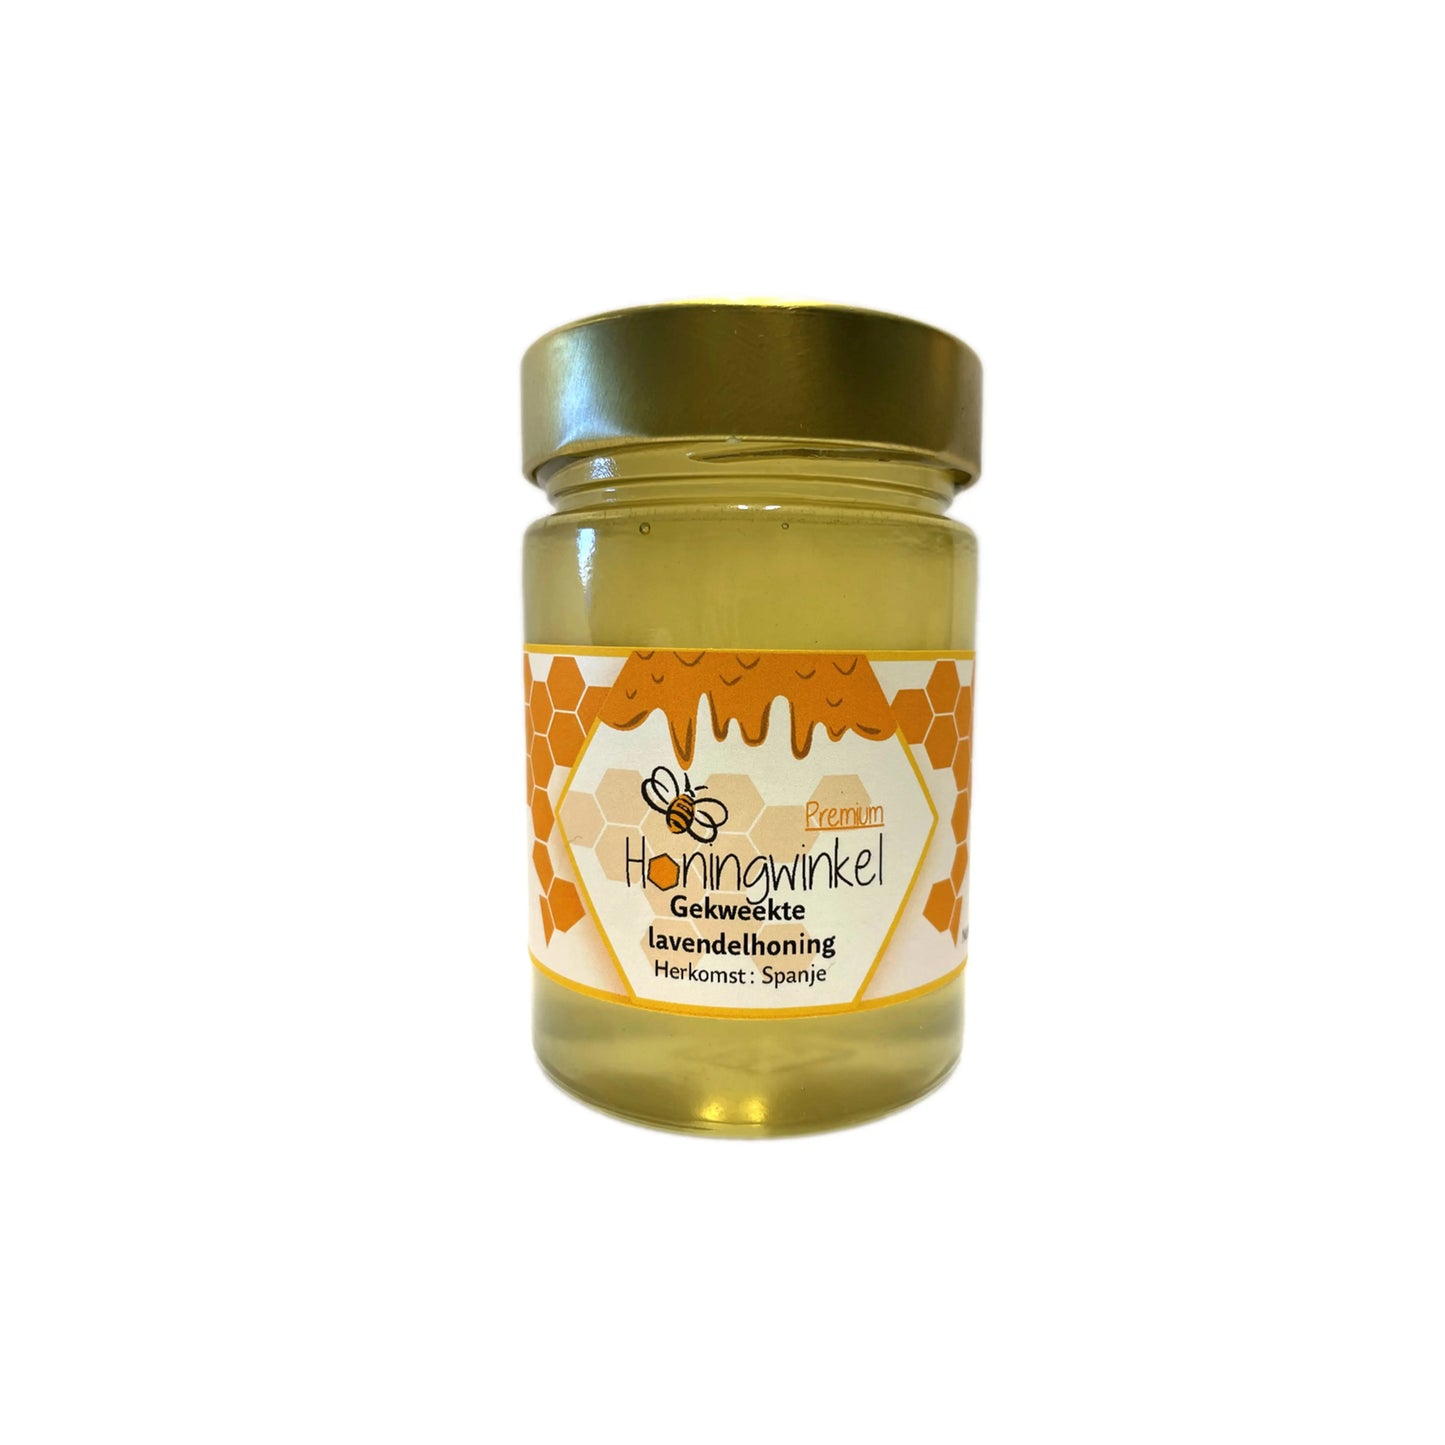 Premium gekweekte lavendelhoning Spanje 450g Honingwinkel (vloeibaar) - Honingwinkel